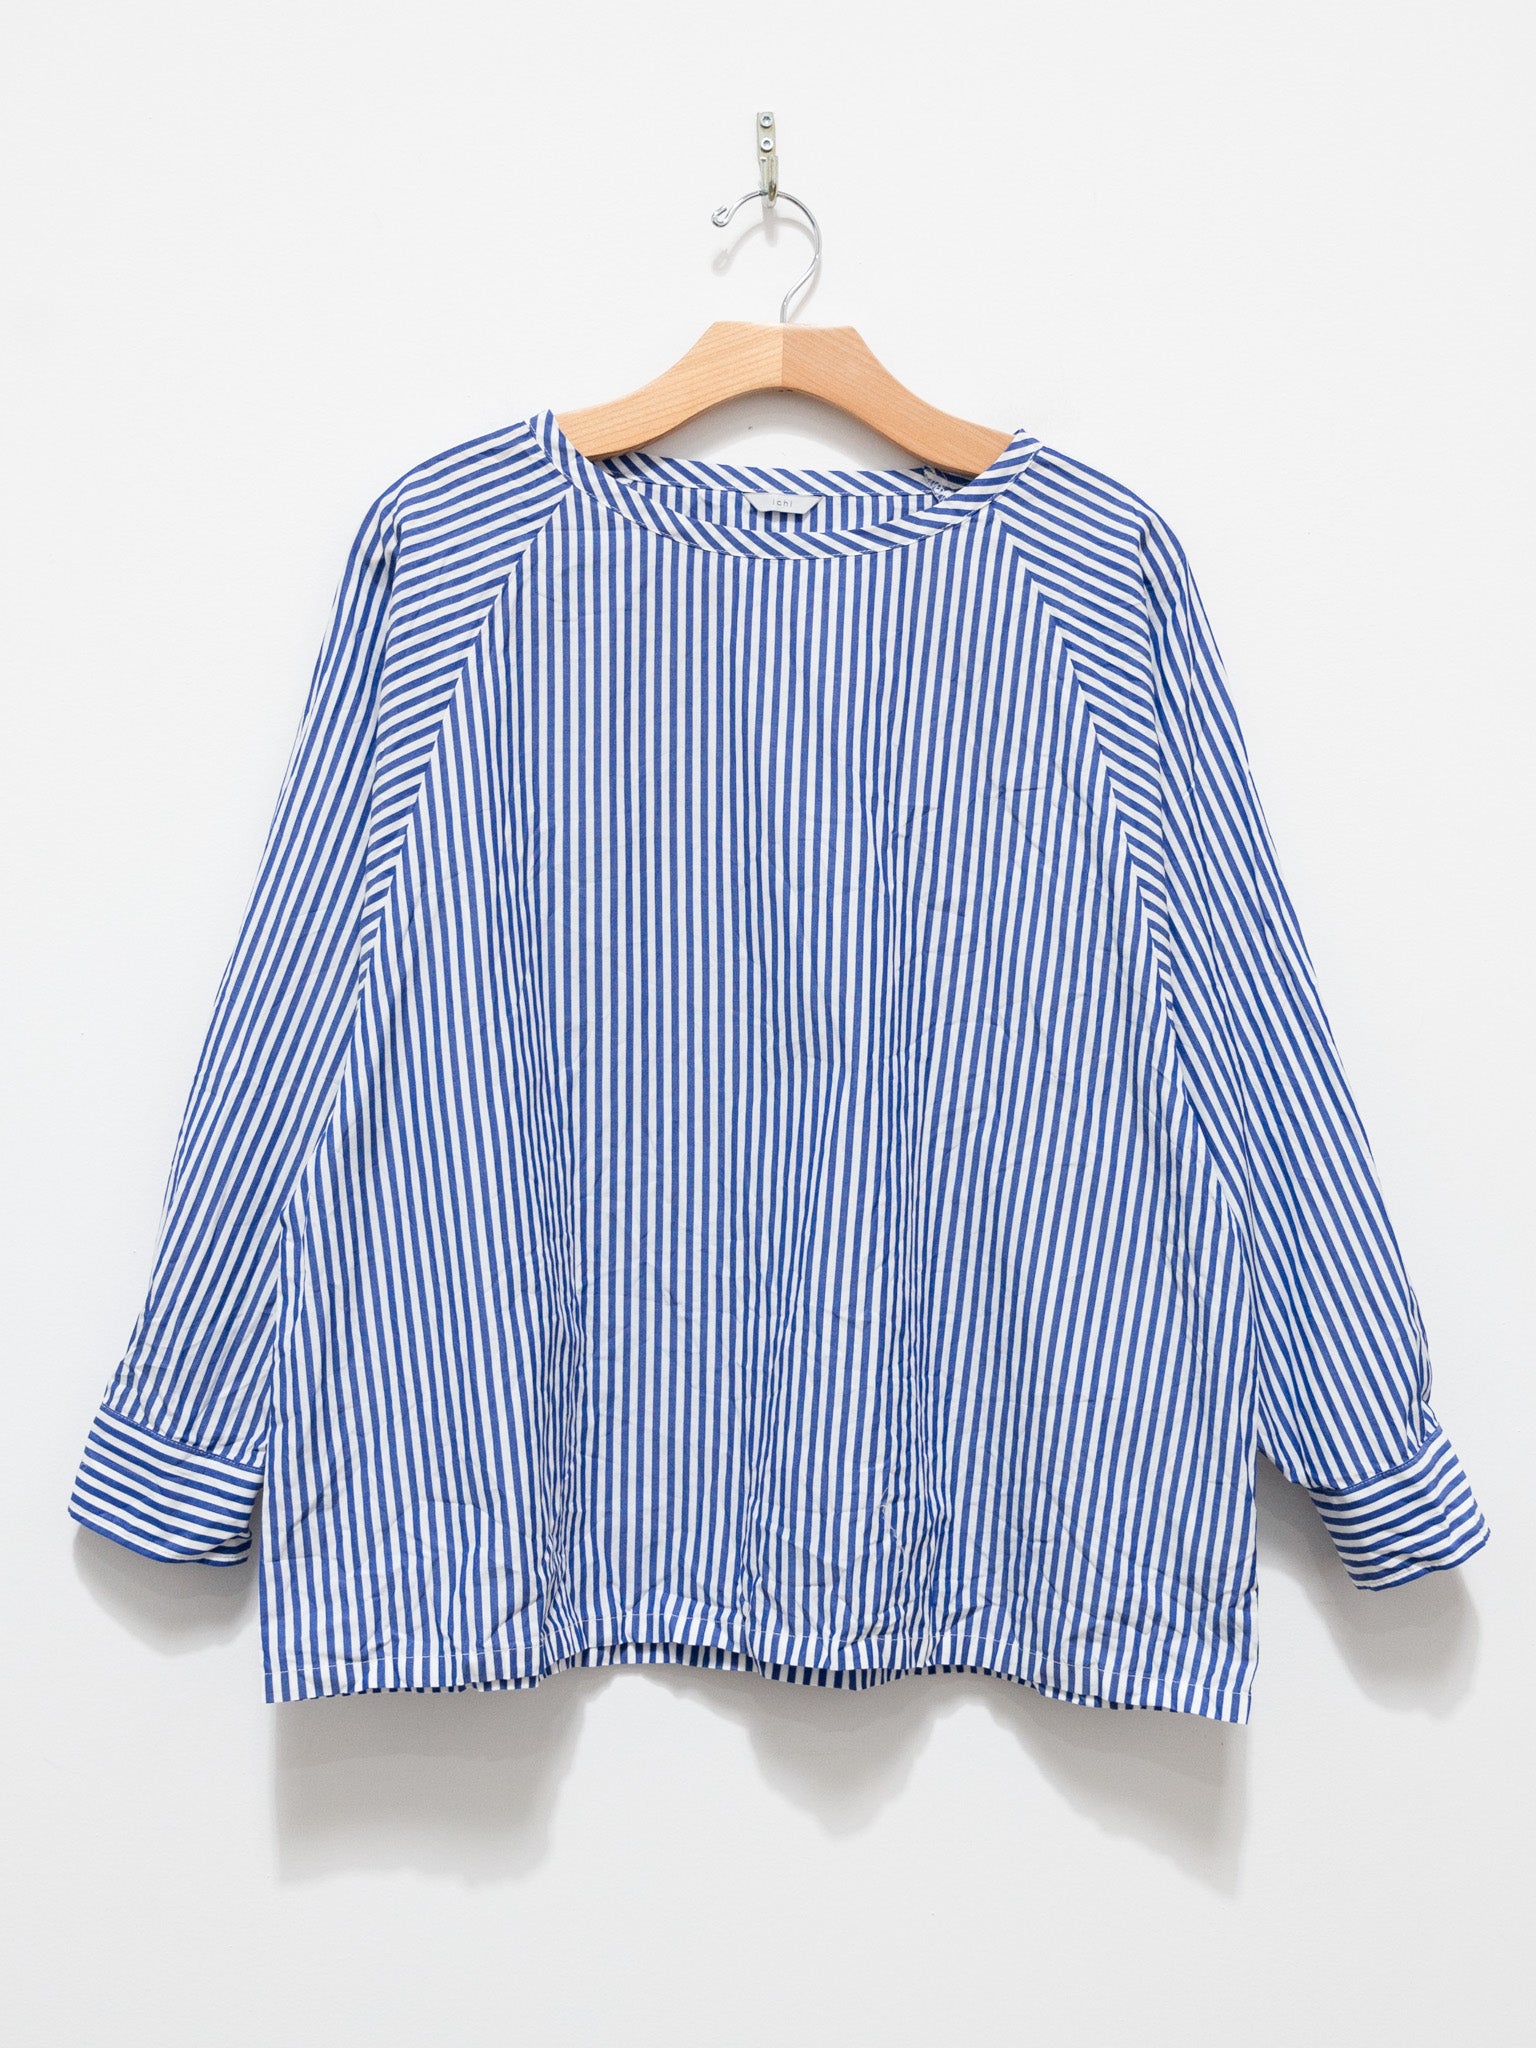 Namu Shop - ICHI Washer Pullover Top - Blue Stripe